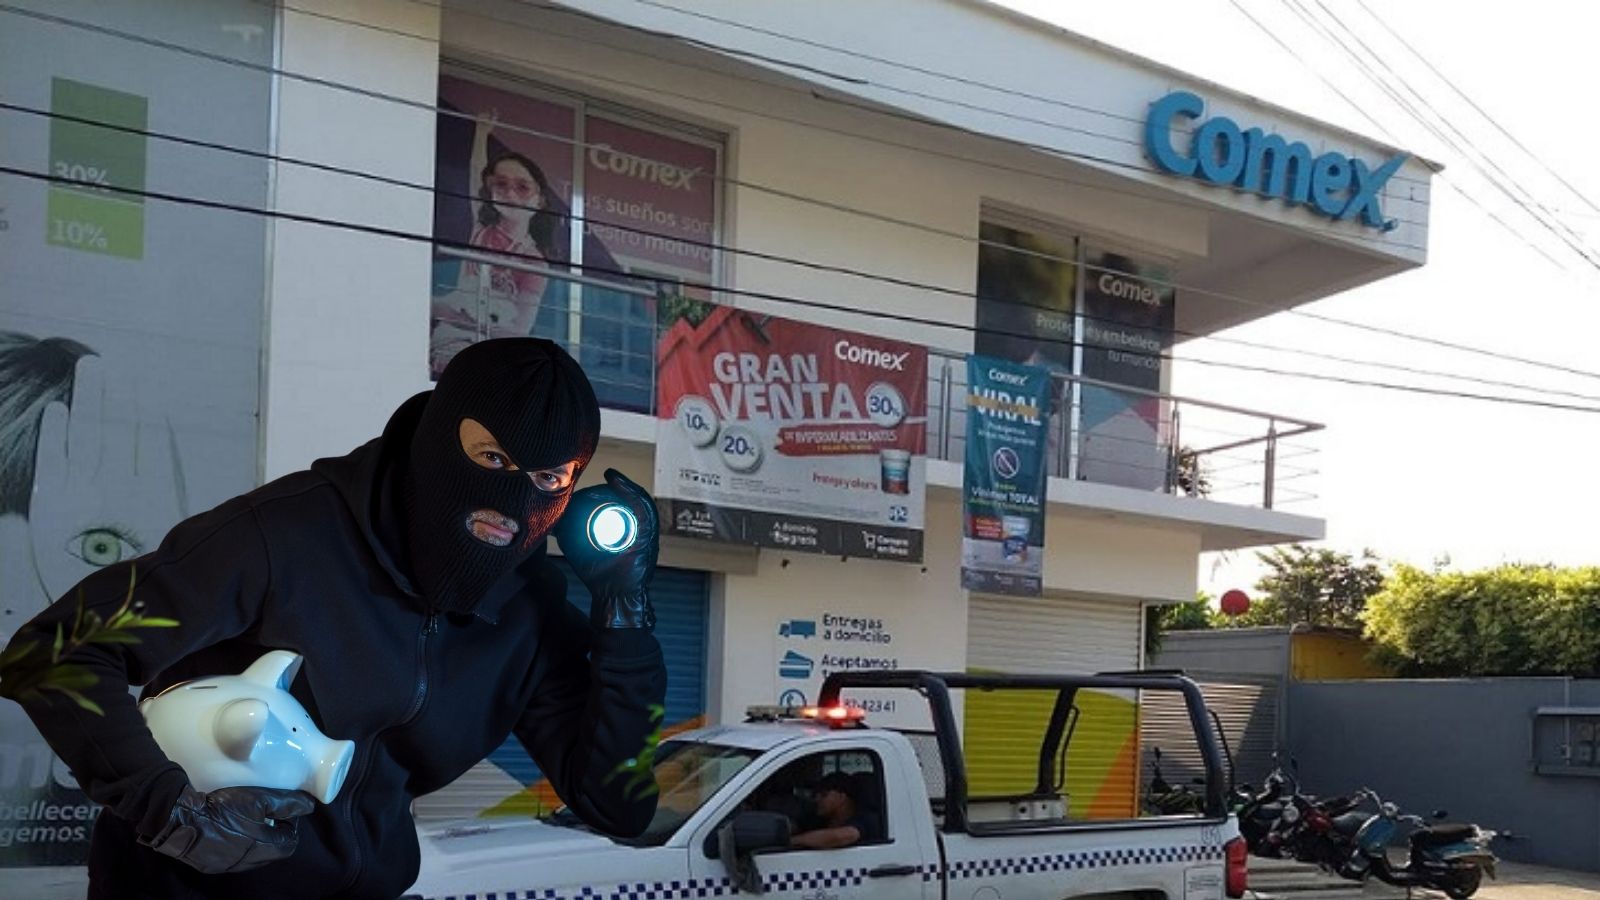 Amantes de lo ajeno roban una tienda Comex | NVI Cuenca